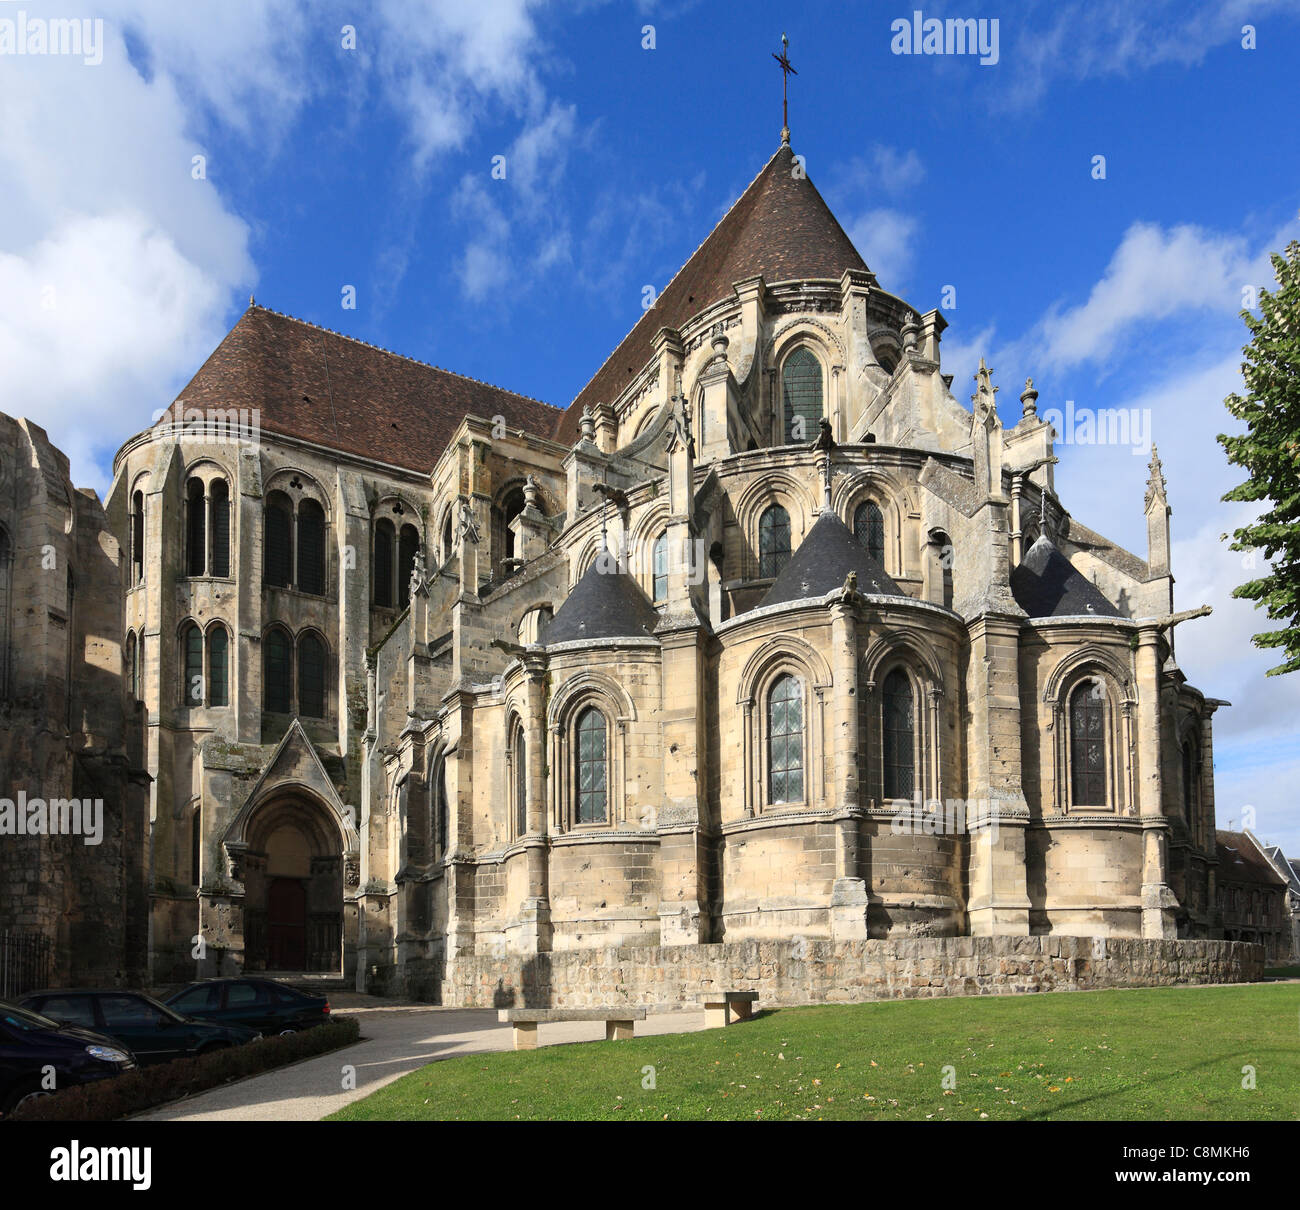 Noyon Kathedrale in der Oise, Frankreich - Ostfassade Stockfoto